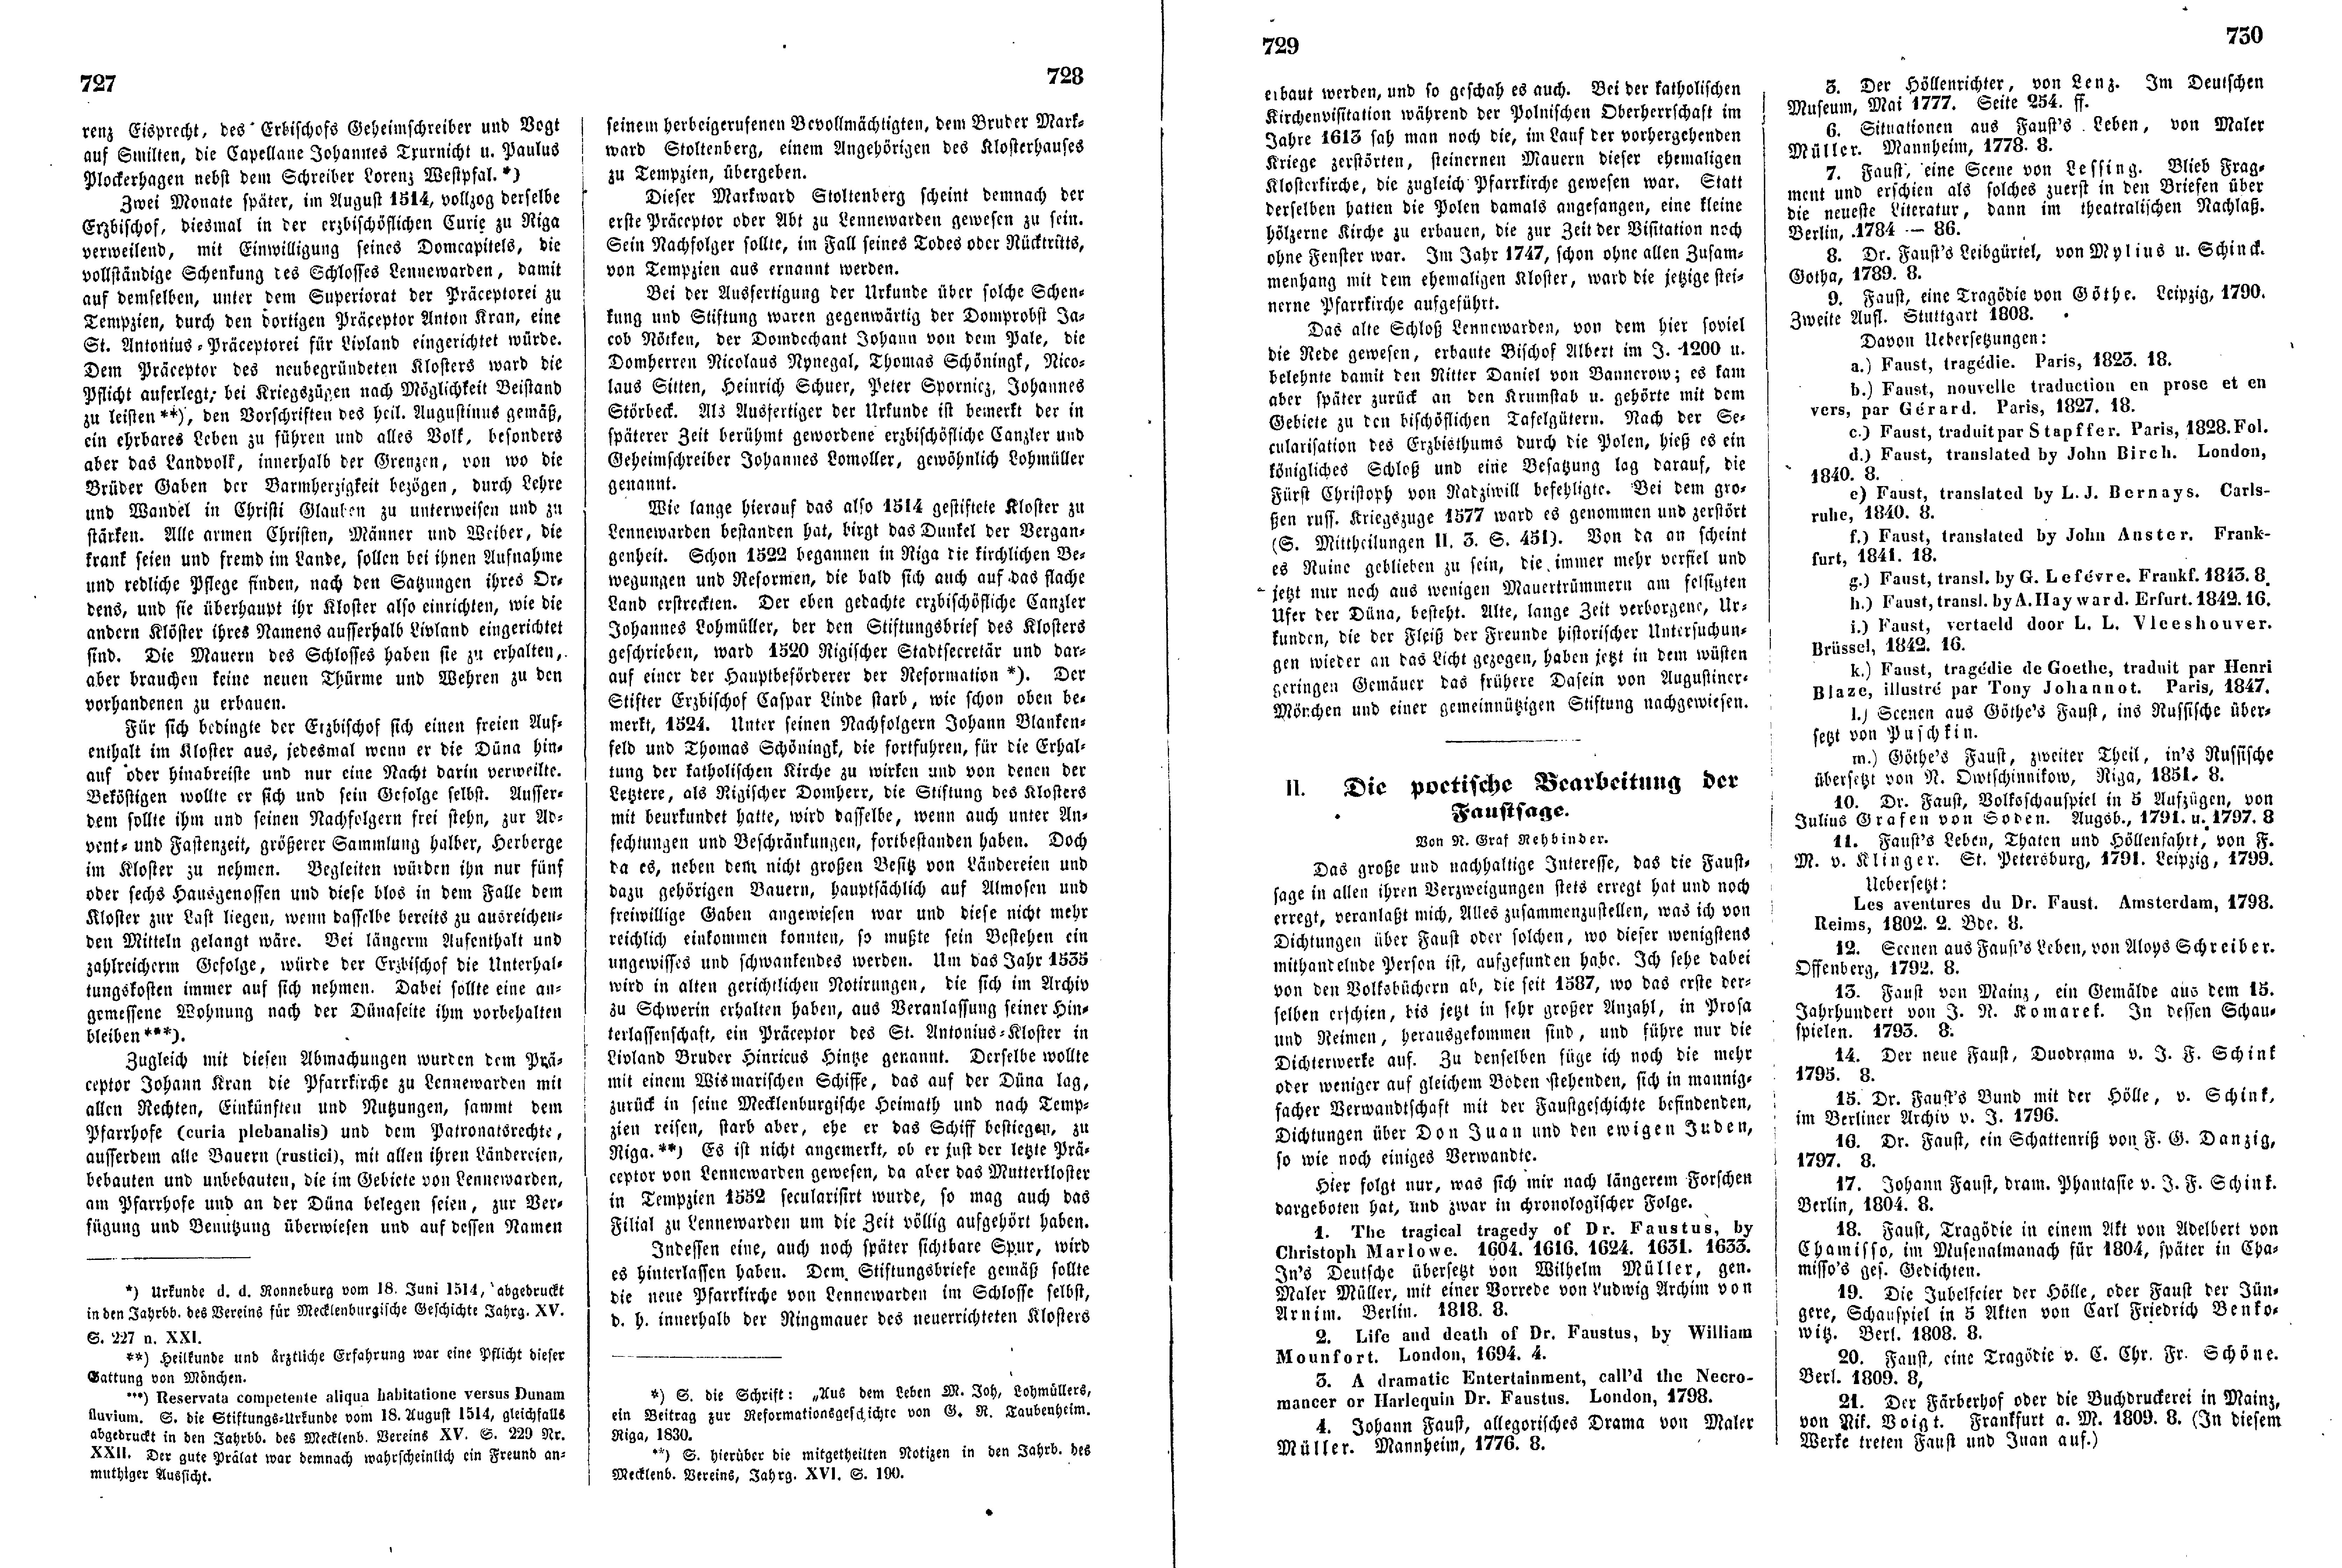 Die poetische Bearbeitung der Faustfrage (1853) | 1. (727-730) Haupttext